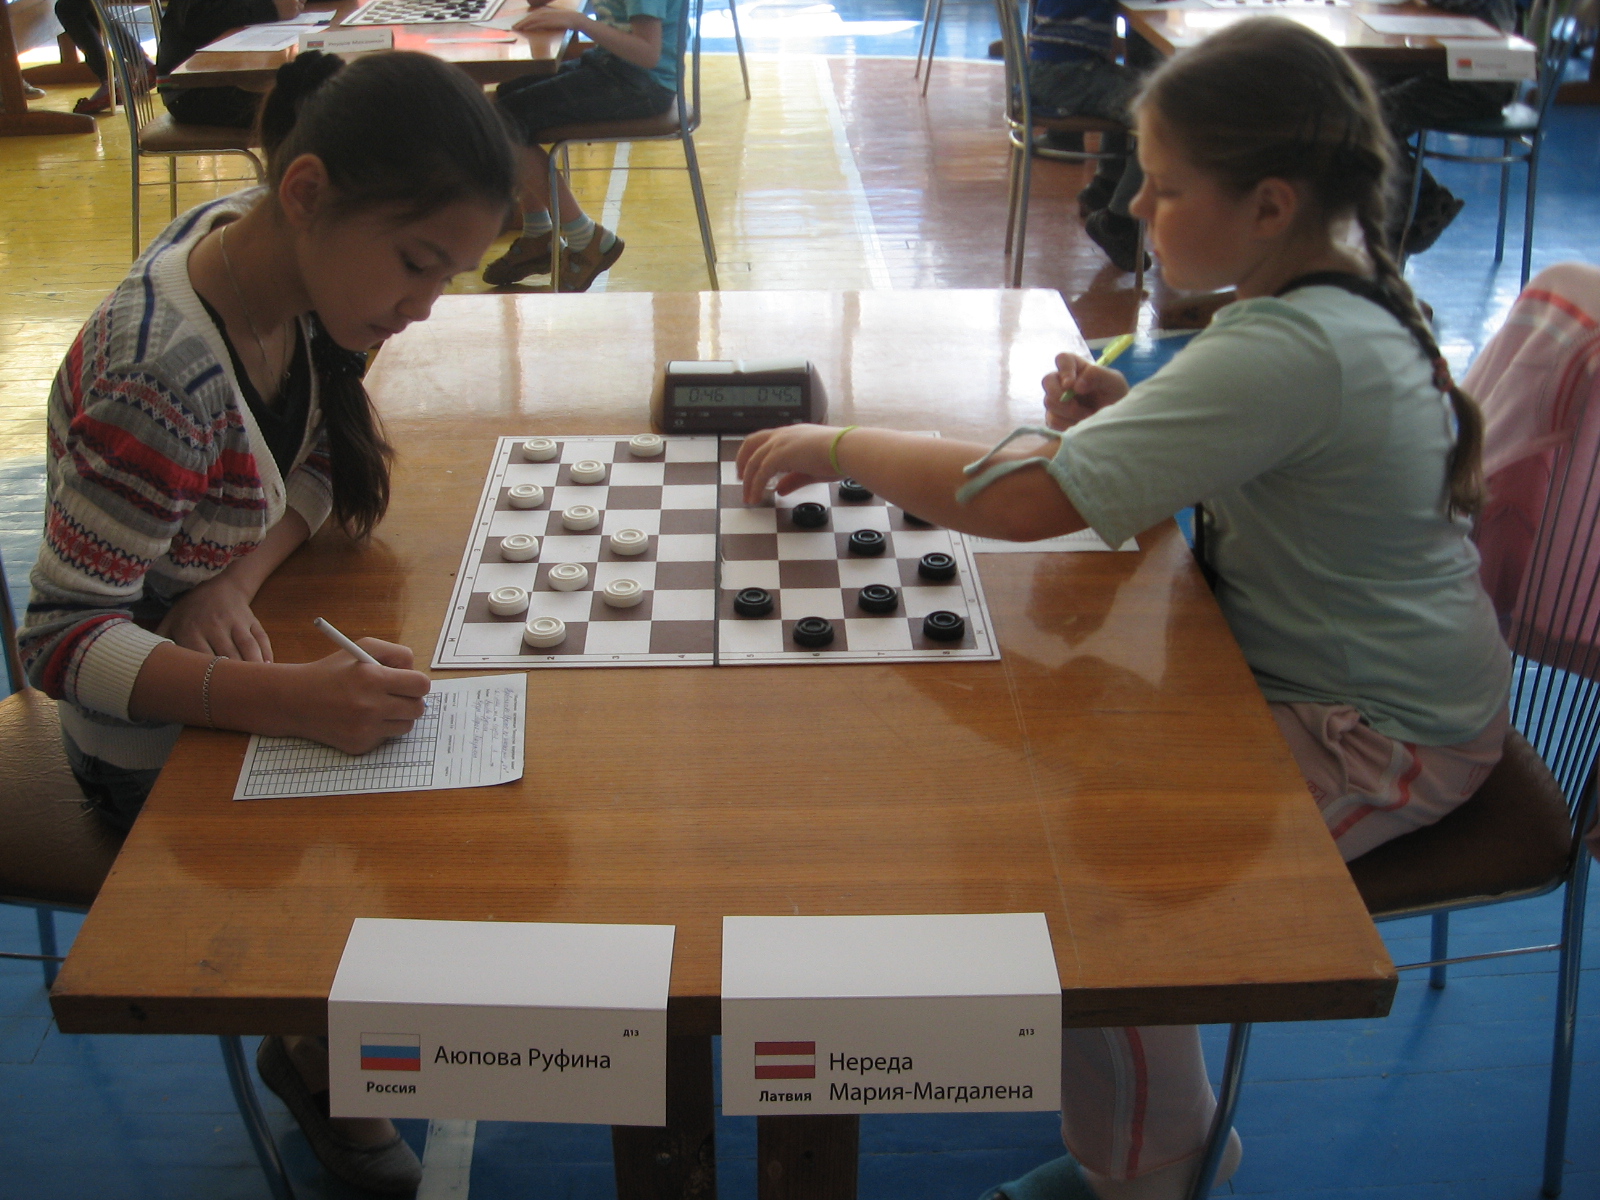 Нажмите для просмотра картинки в полный размер -  Фотогалерея - Чемпионат(Первенство) Европы по шашкам -64 среди юношей и девушек. 2012(Борисов) - 2 й тур - 39.jpg